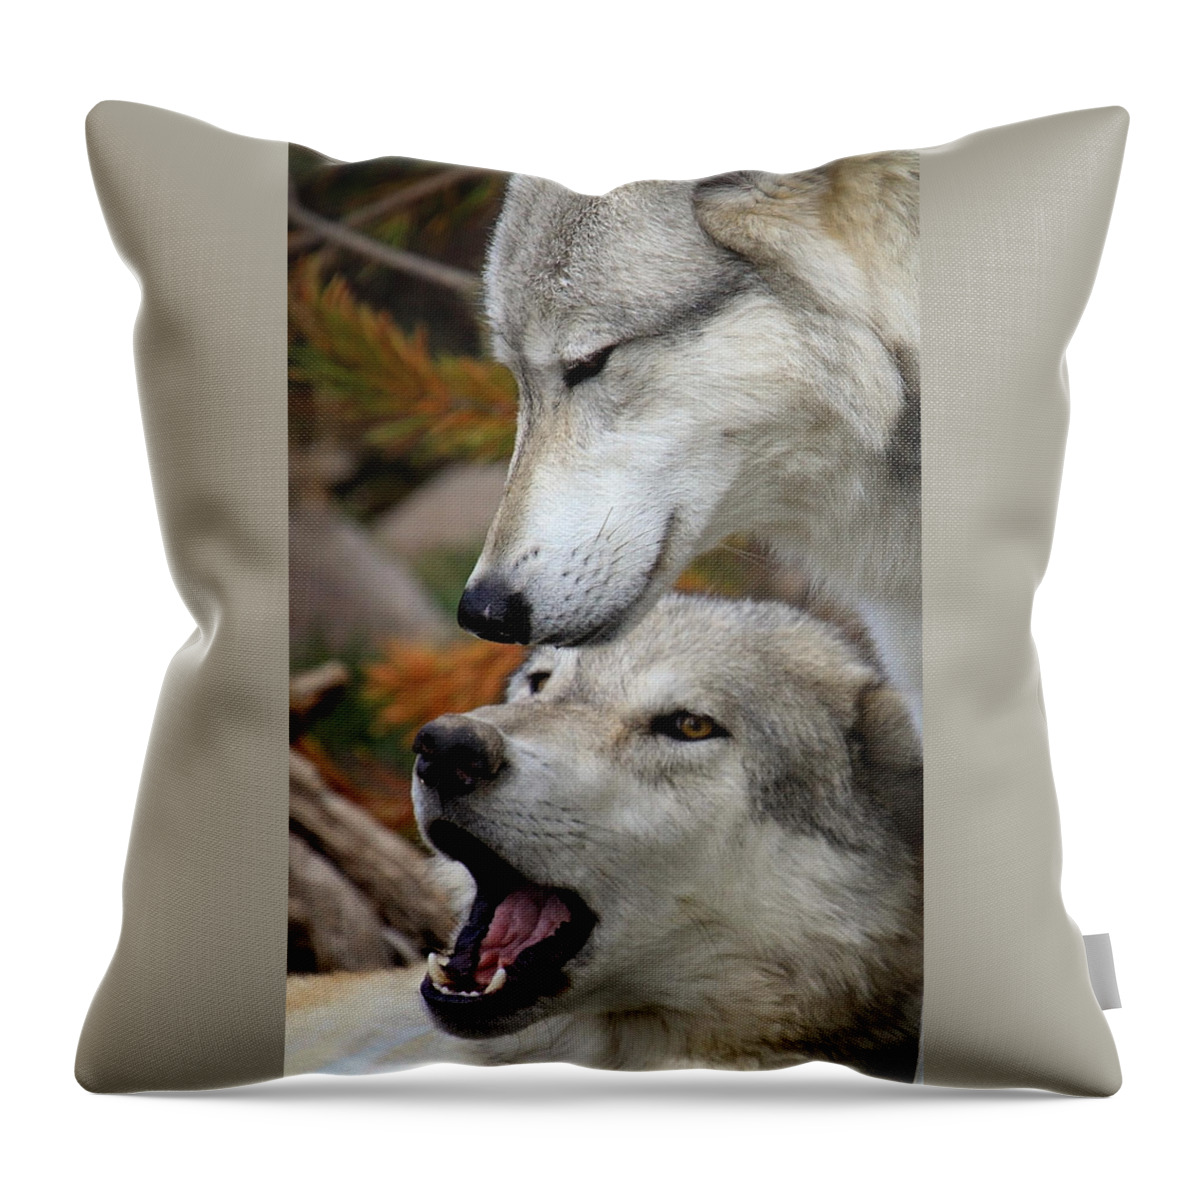 Wolf Art Throw Pillow featuring the photograph Wolf Talk by Steve McKinzie